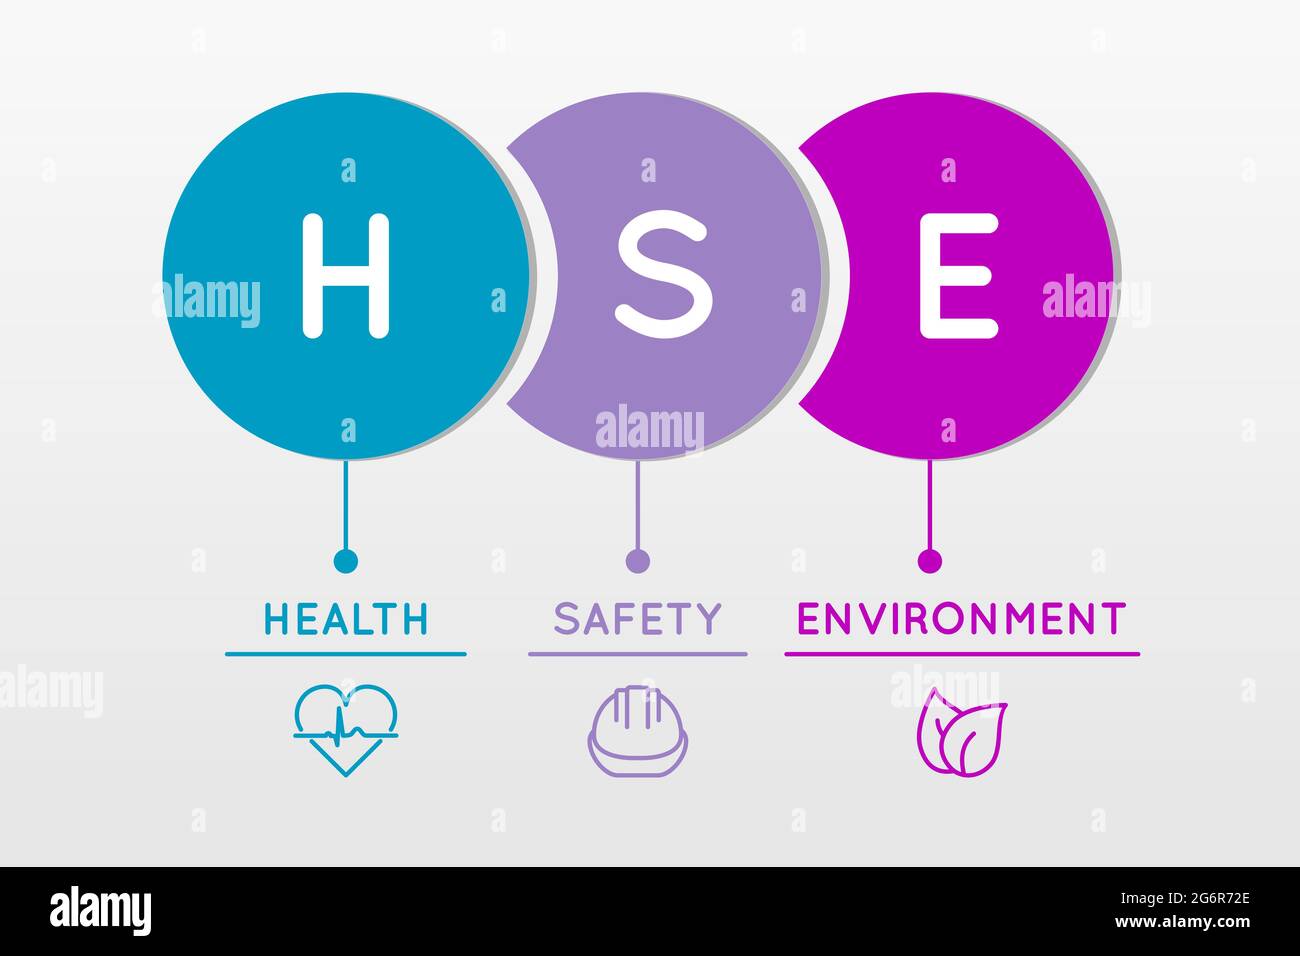 HSE. Gesundheit, Sicherheit und Umwelt. Infografik zu Arbeitssicherheit und Gesundheitsschutz. Sicherer Industrie- und Arbeitsplatzstandard. Akronym mit Blatt und Helm. Stock Vektor